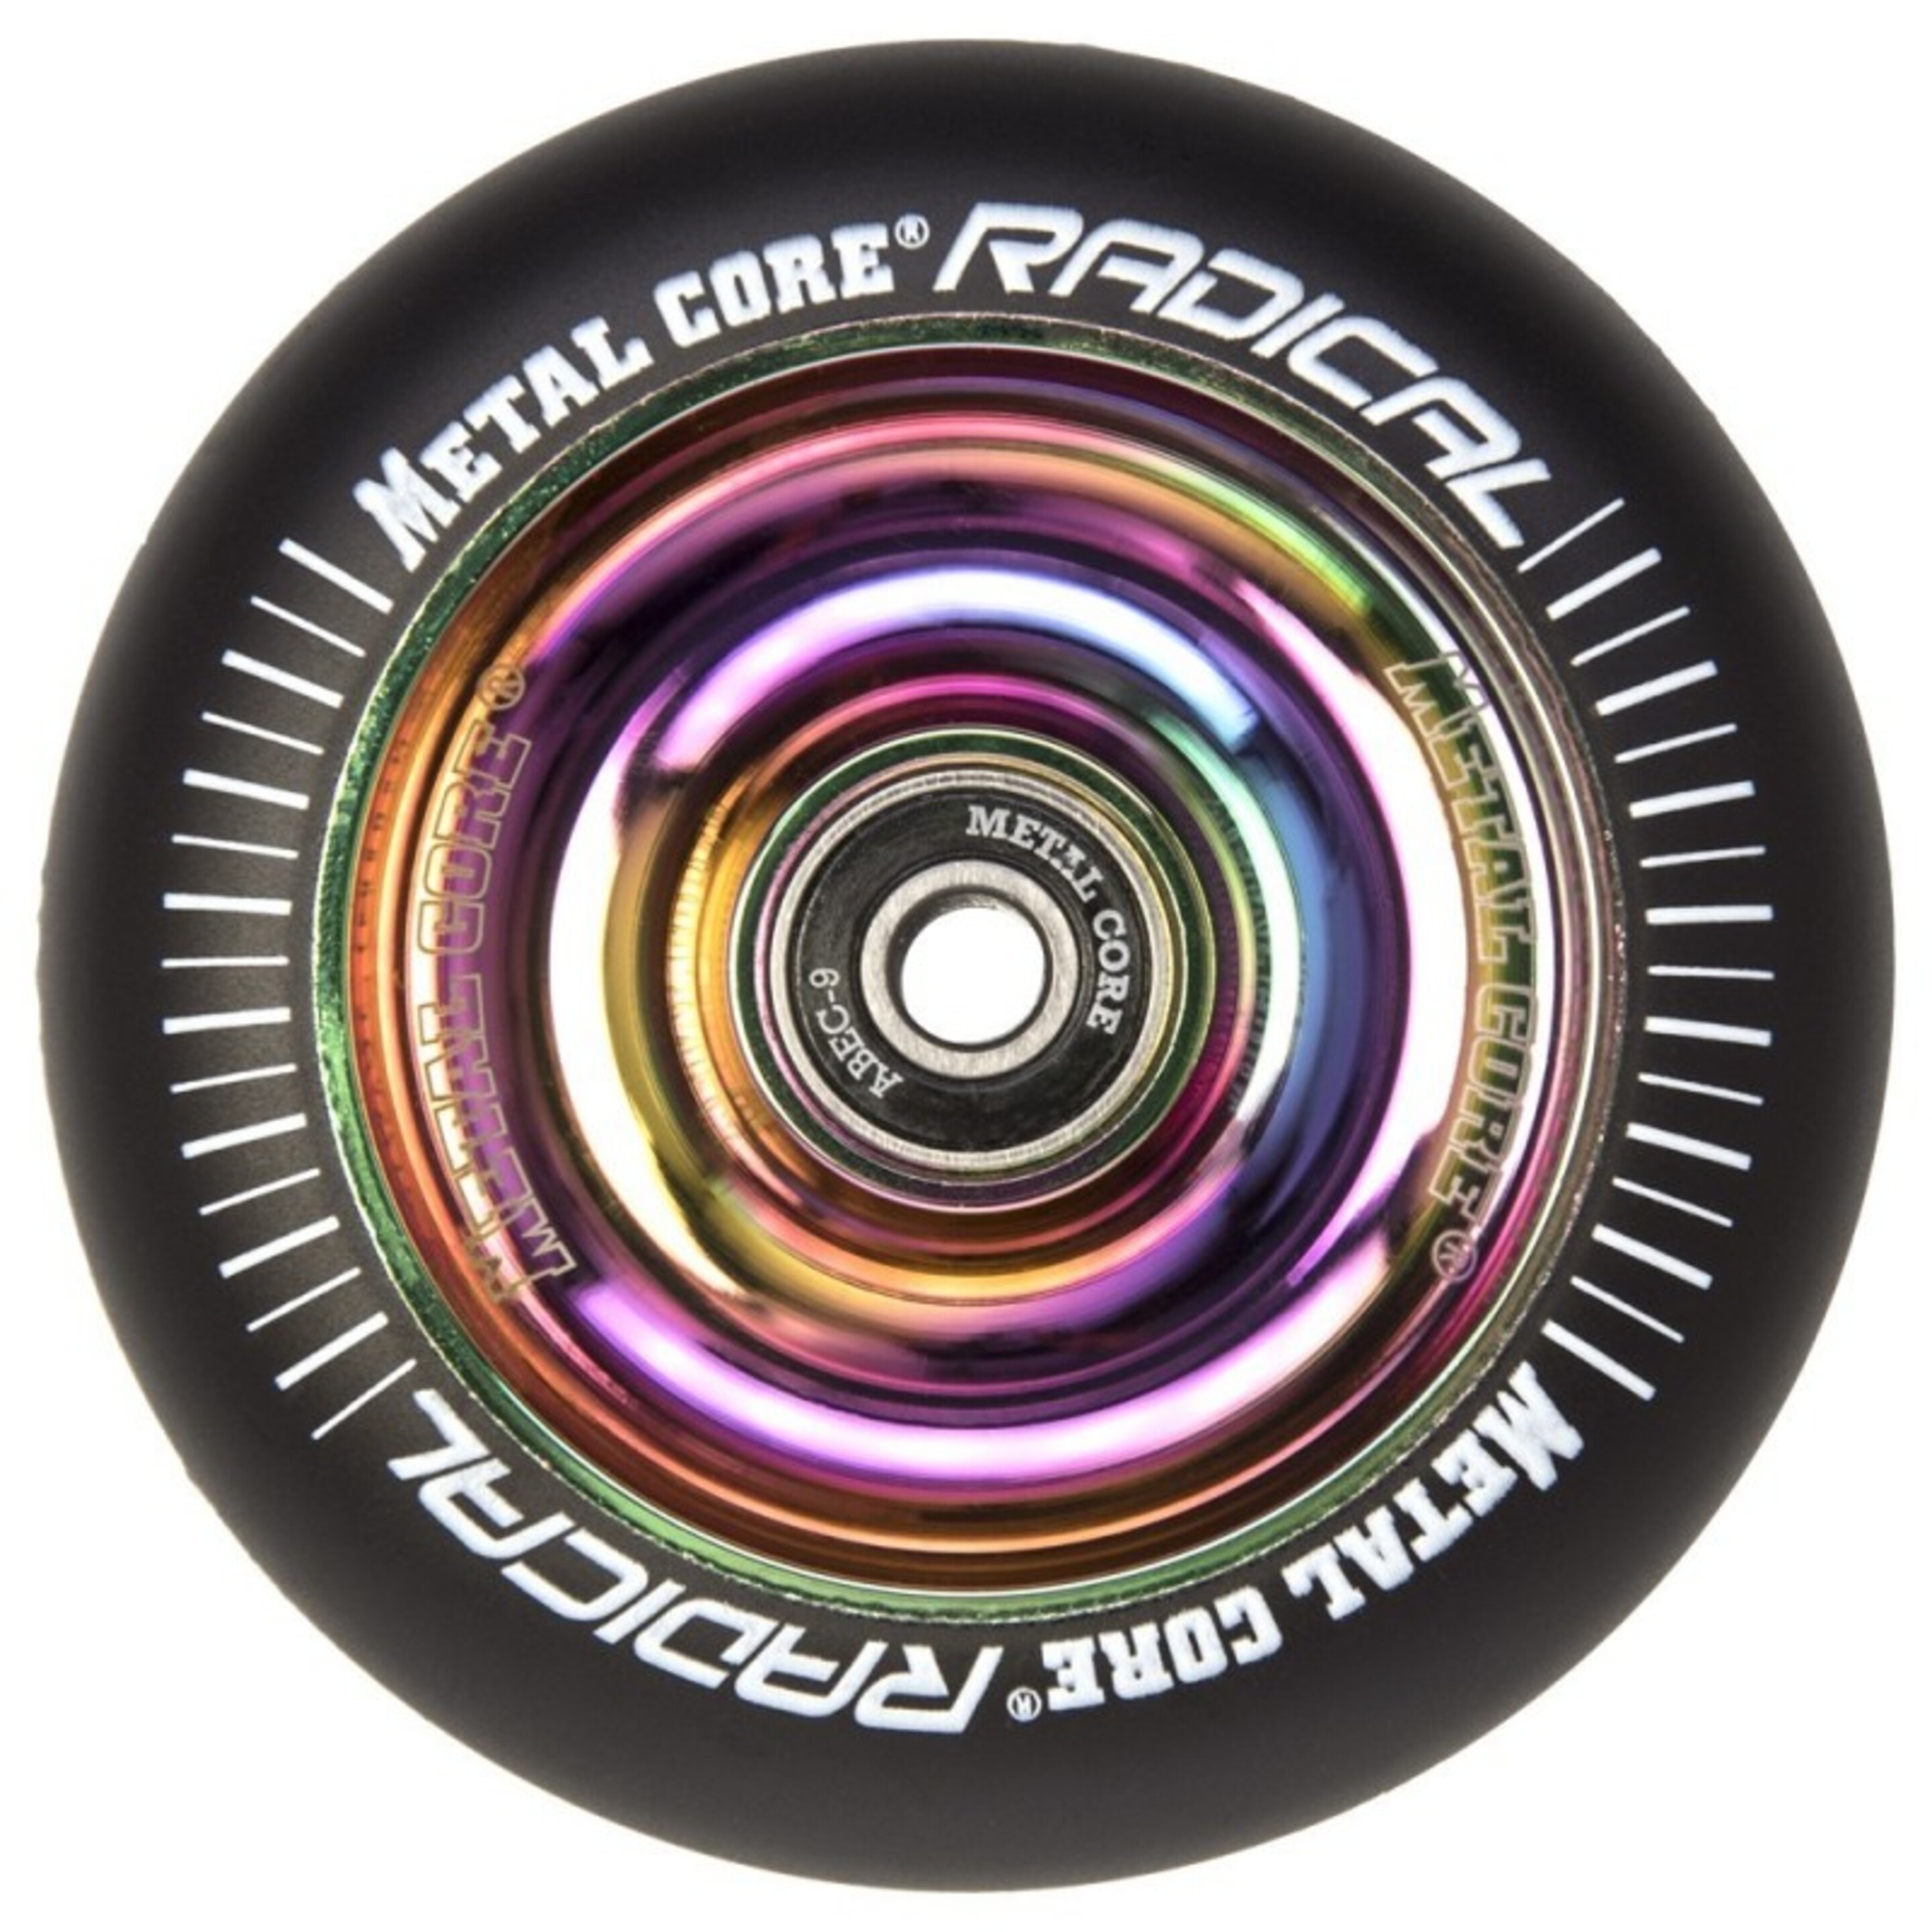 Ruedas Metal Core Radical Ref. Radical 100 Mm - multicolor - 